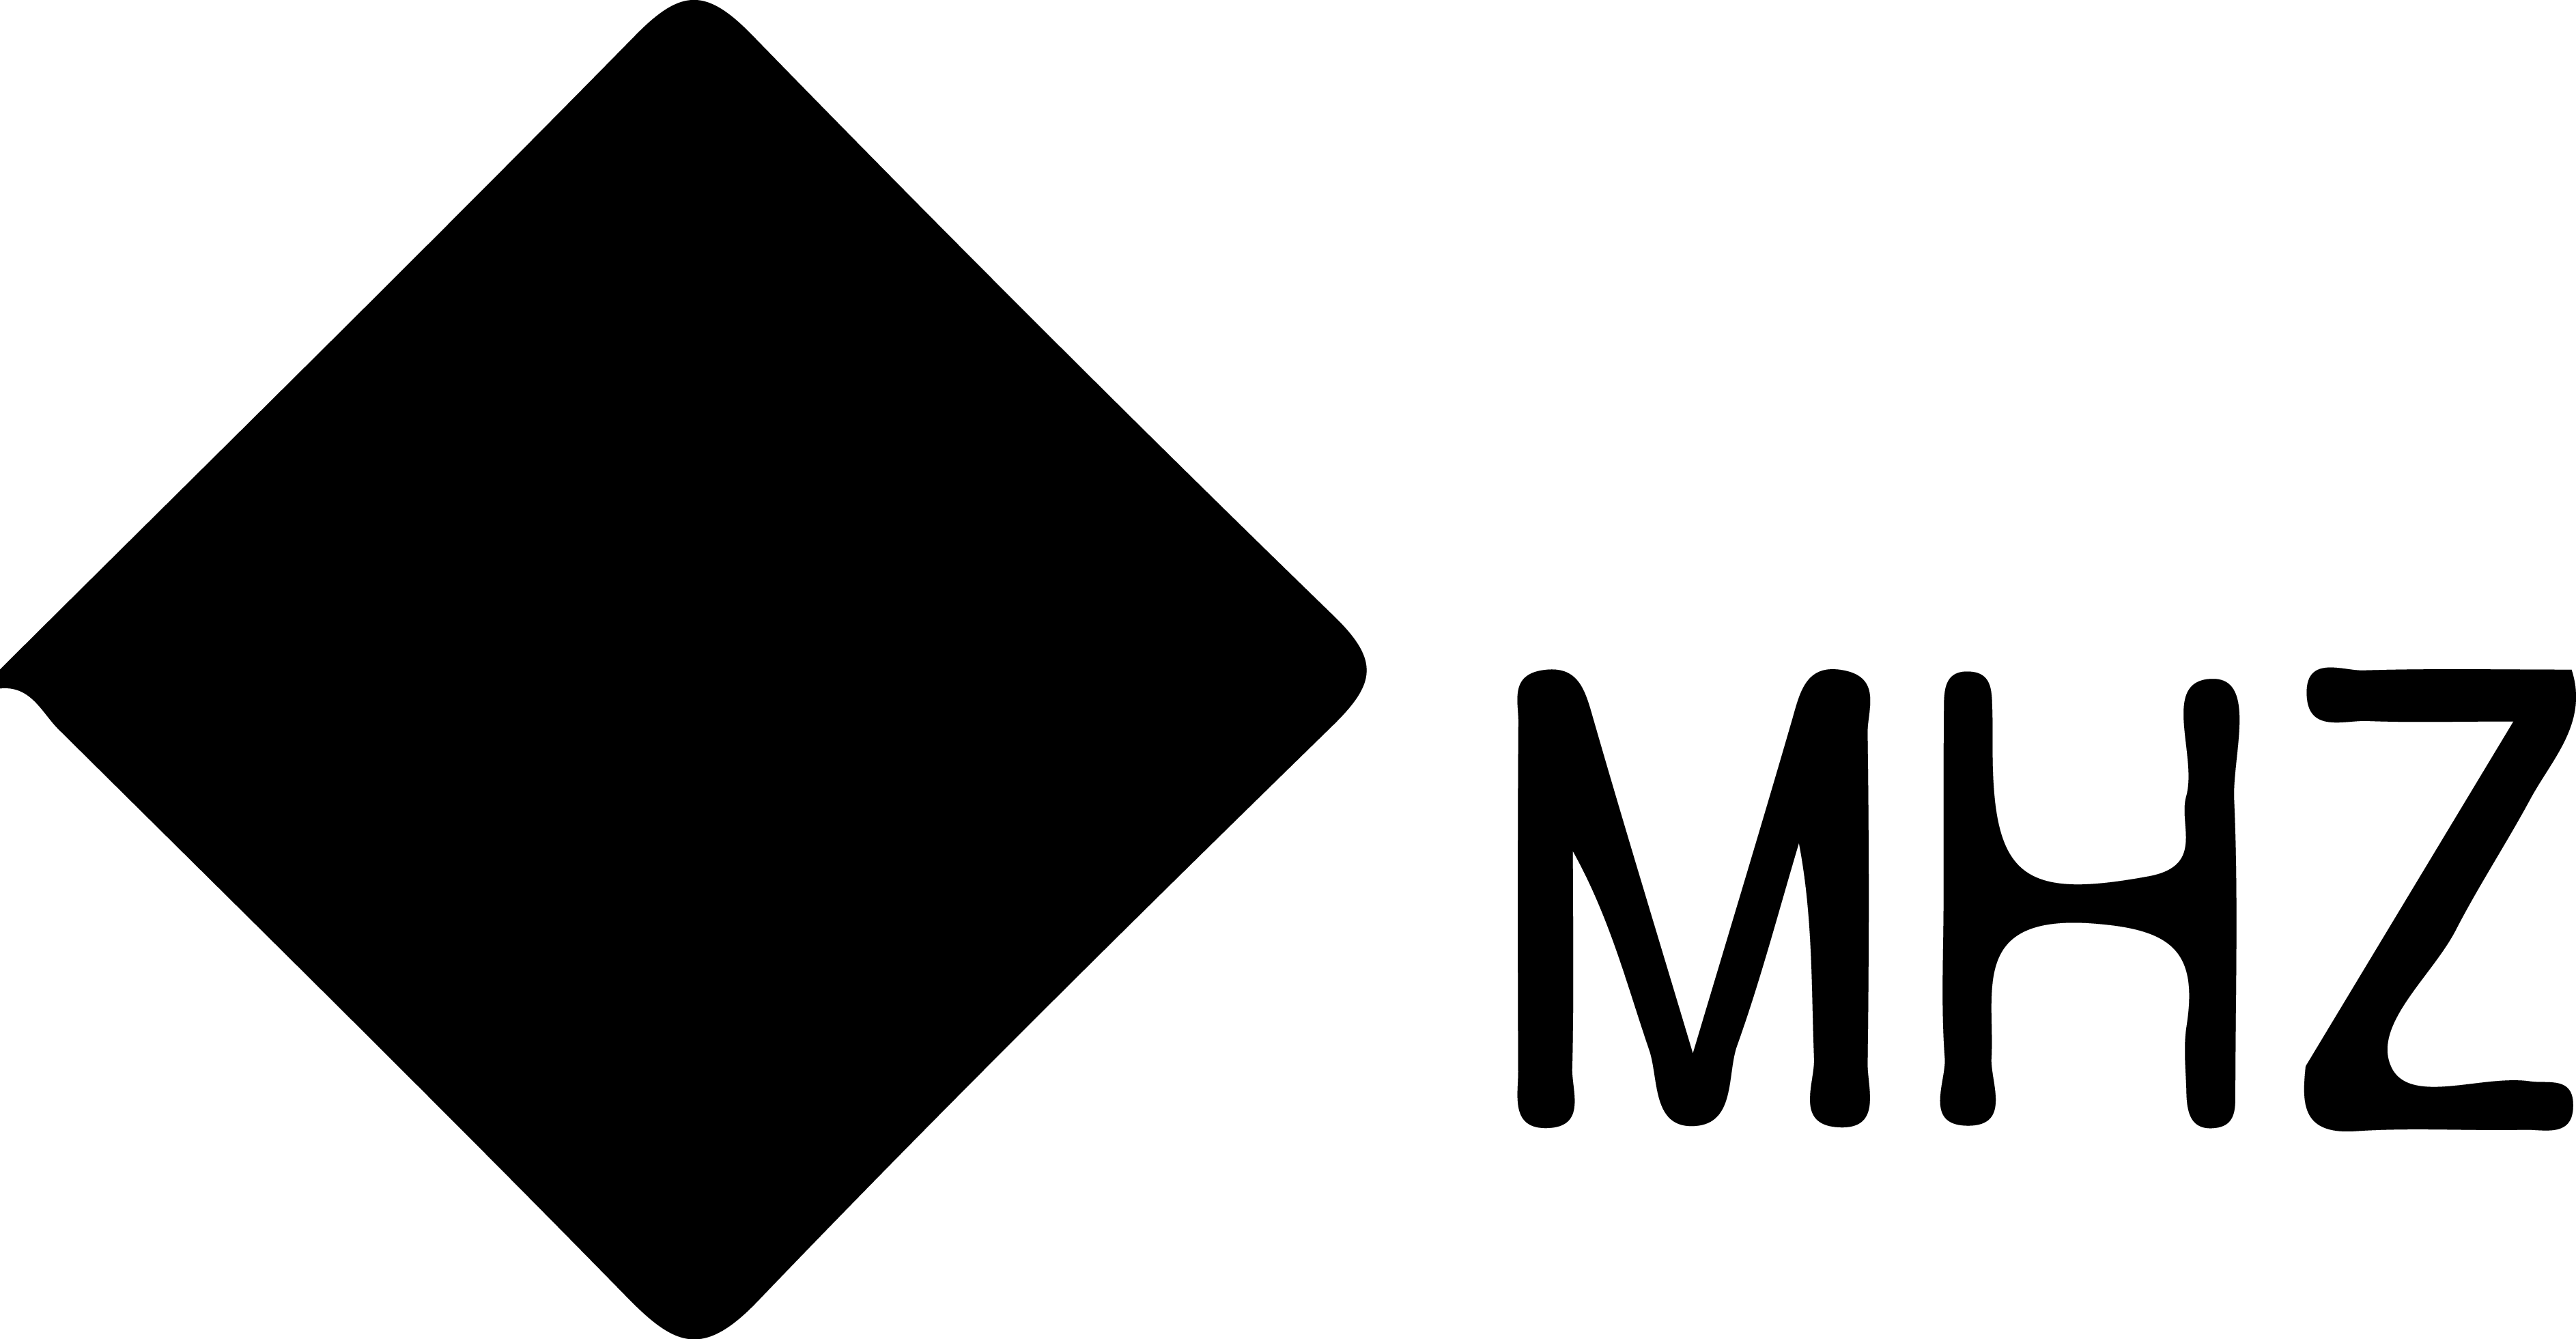 Mhz